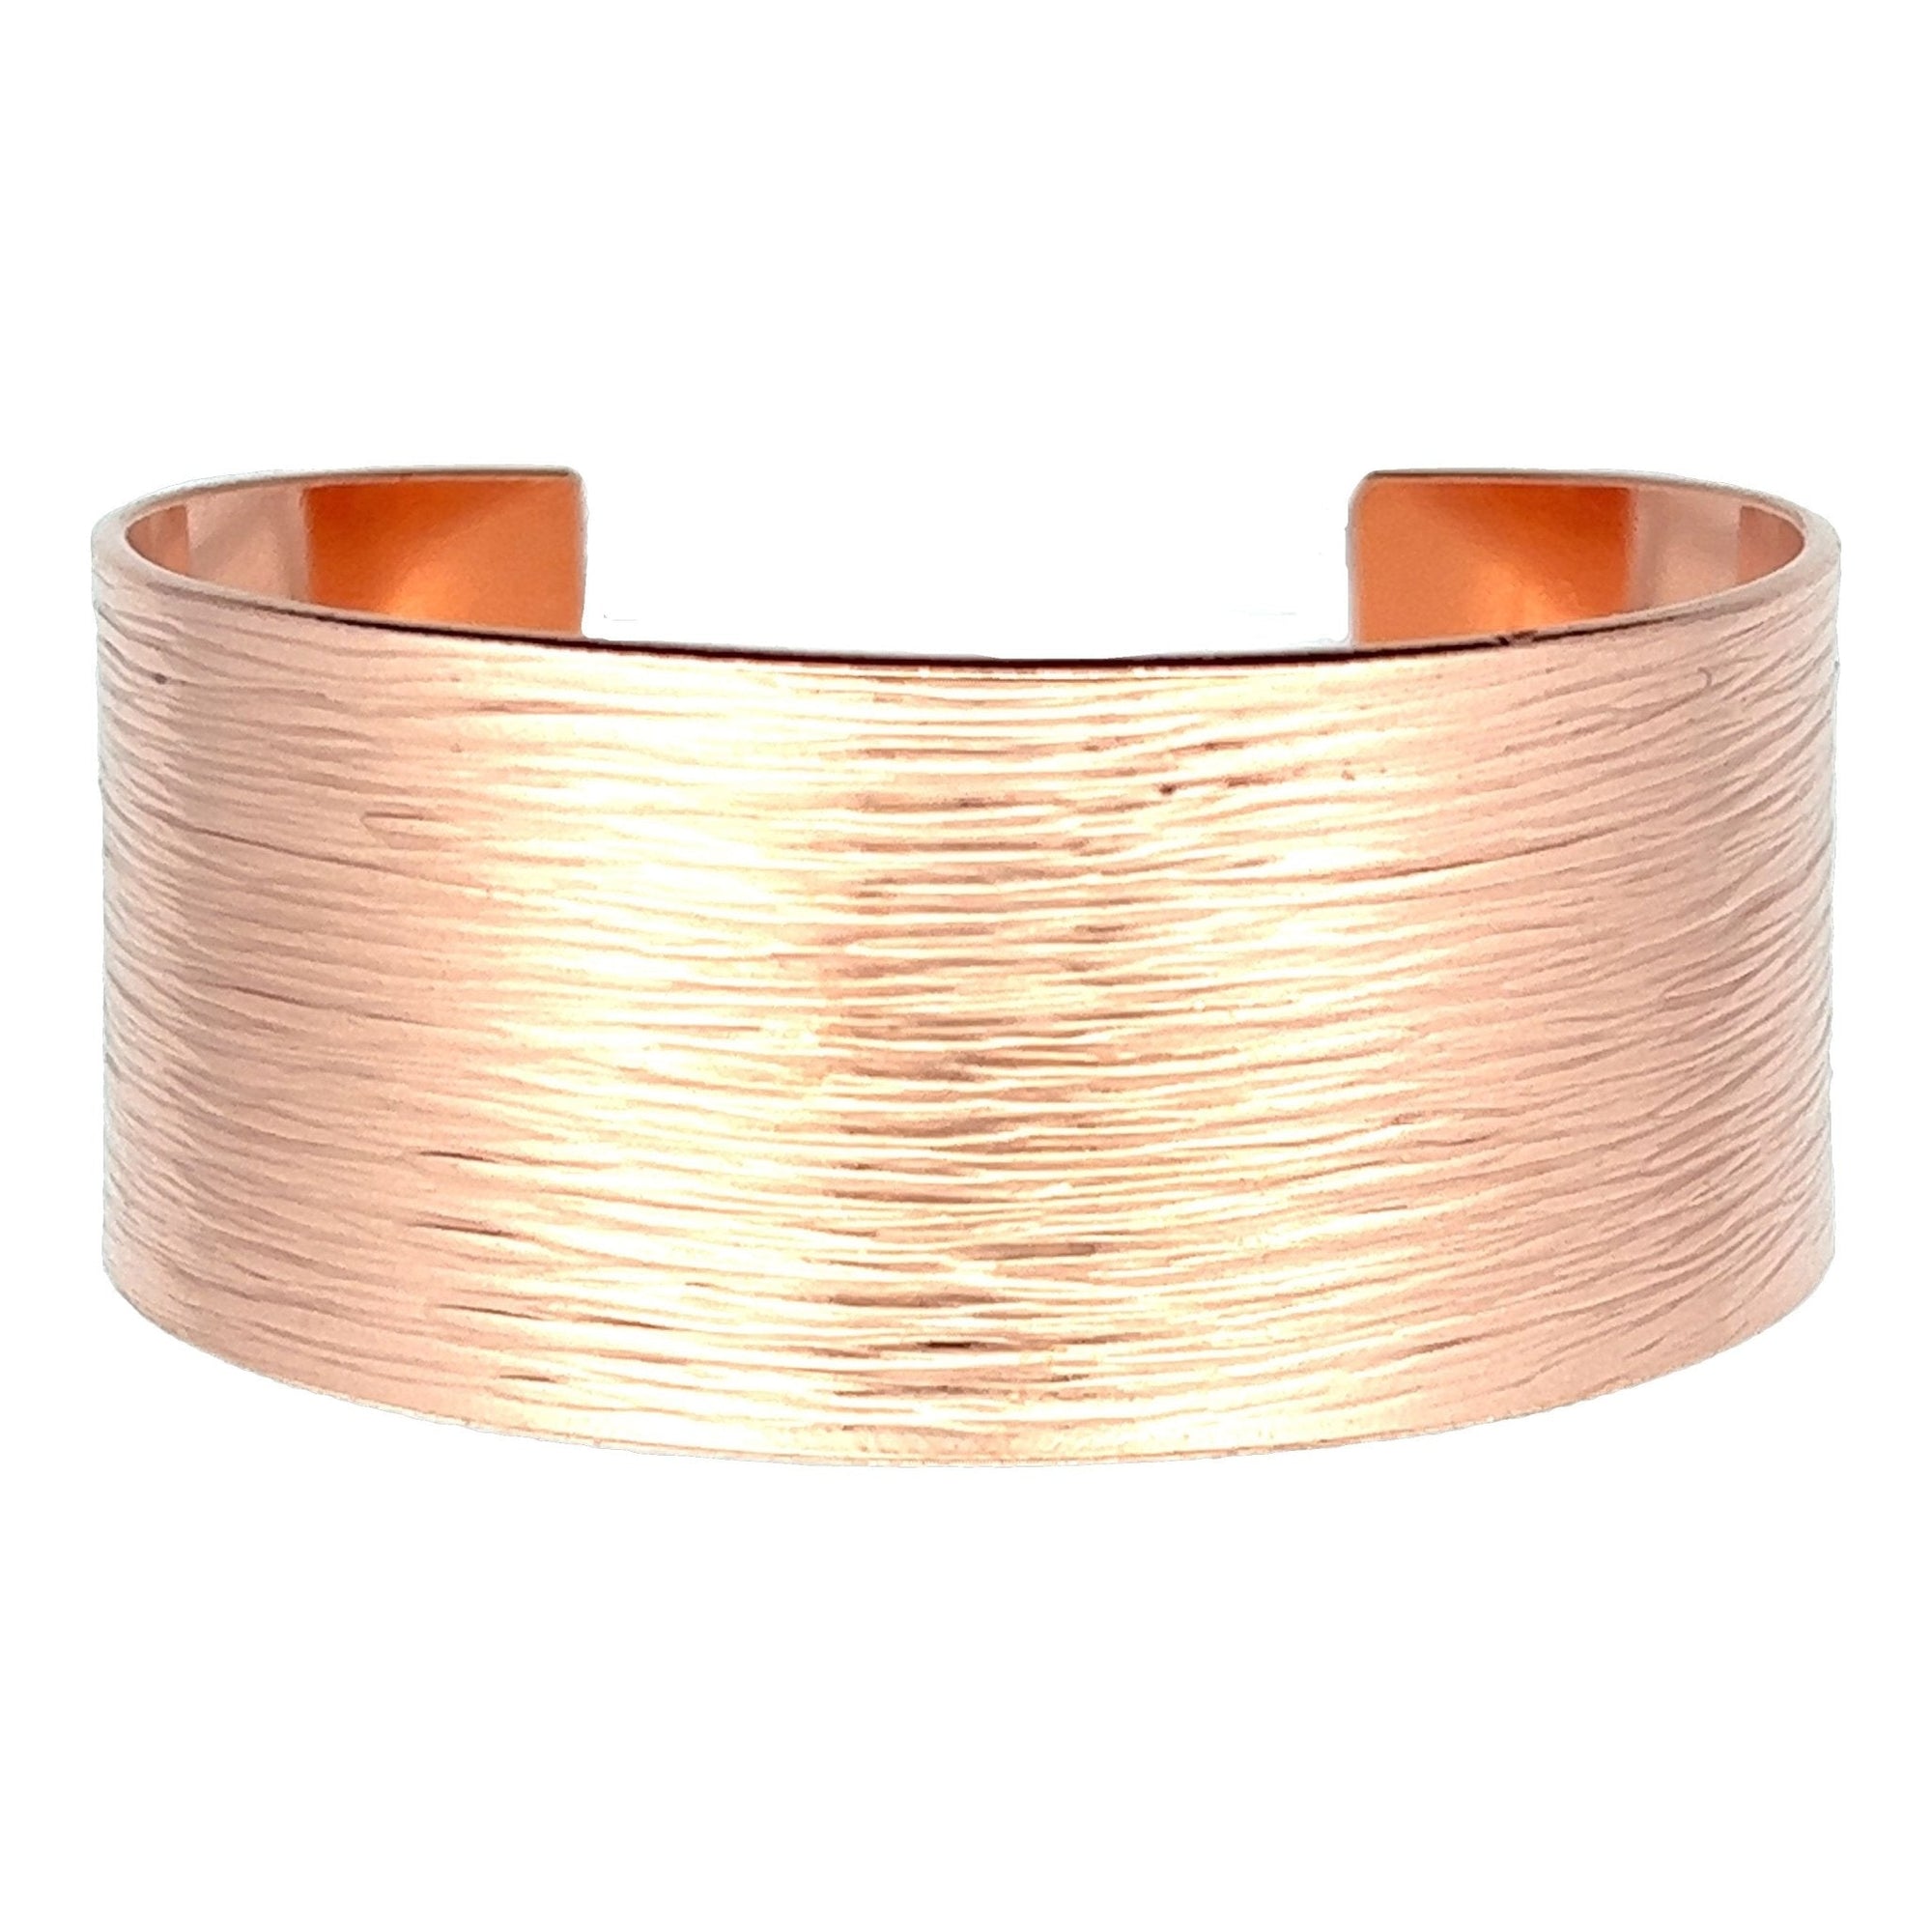 Detail of 1 Inch Wide Men's Bark Copper Cuff Bracelet 